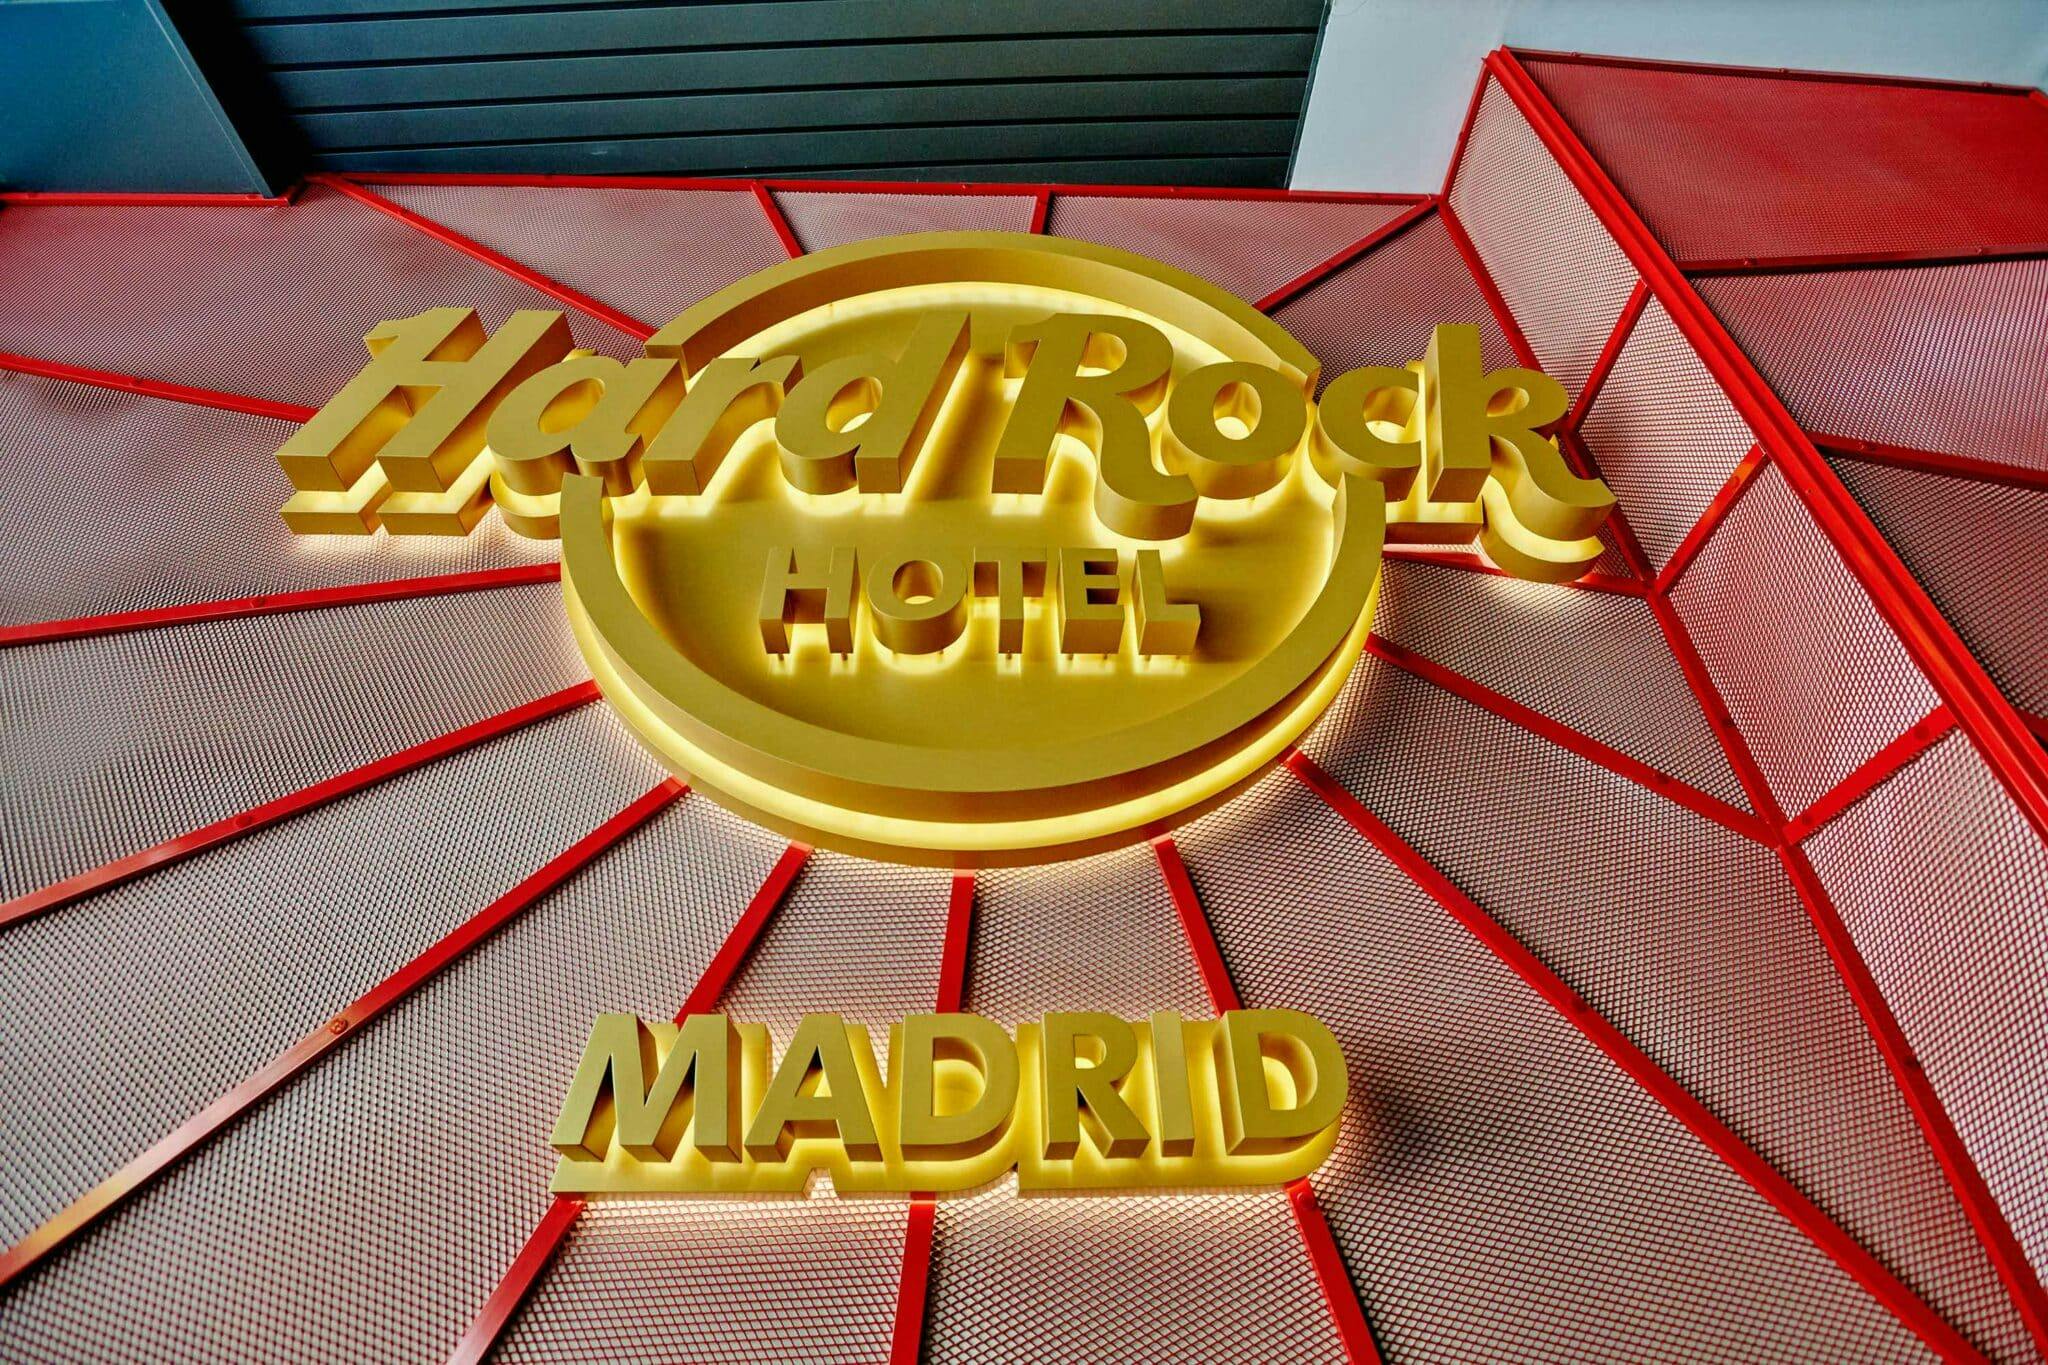 Numero immagine 53 della sezione corrente di Hard Rock Hotel Madrid di Cosentino Italia